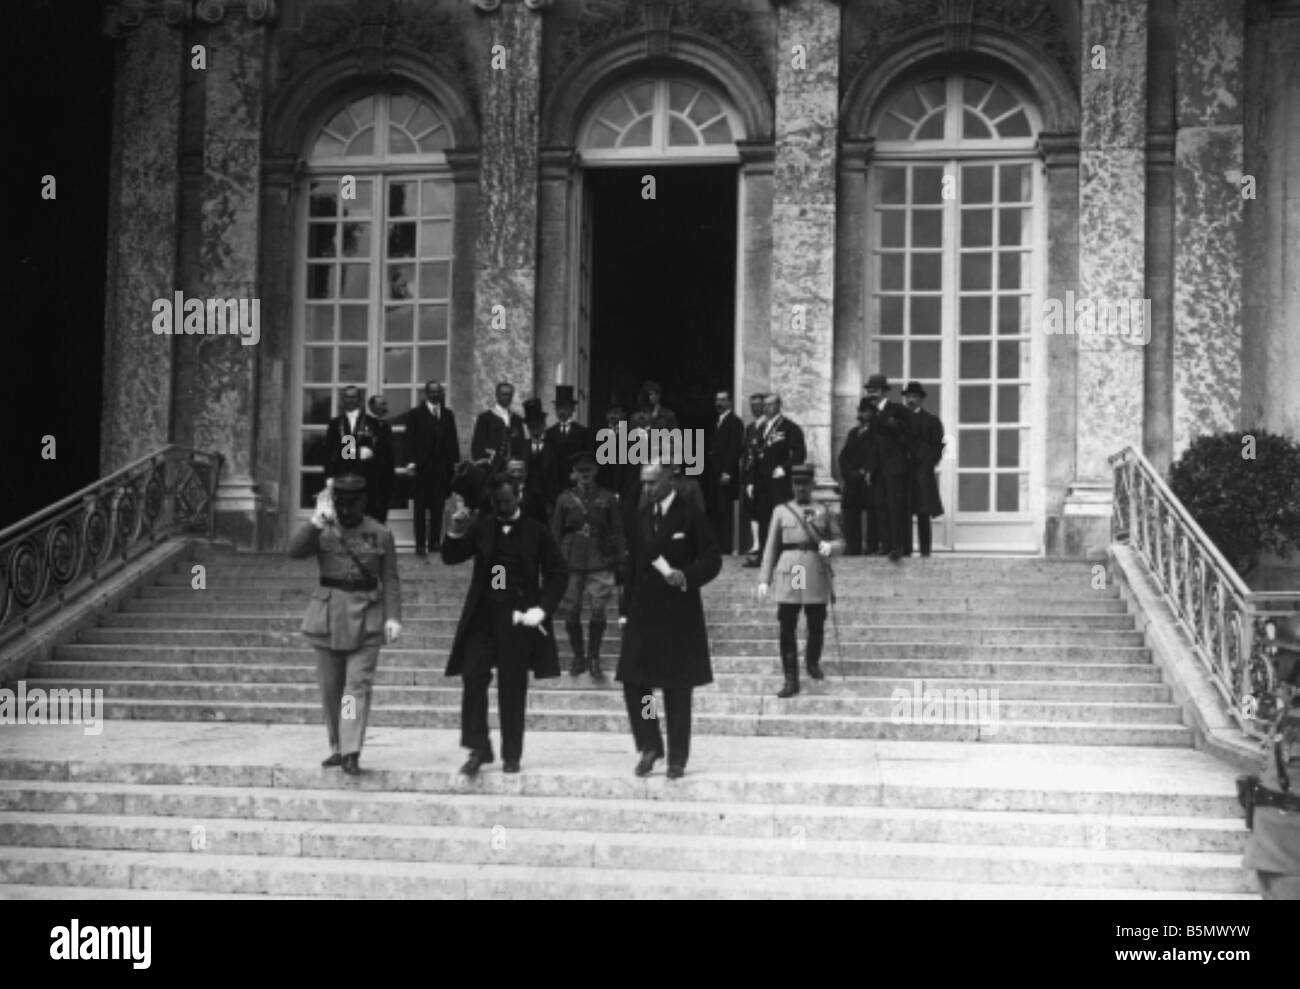 9UN 1920 6 4 A1 1 E Frieden Vertrag von Trianon 1920 Foto Frieden Vertrag von Trianon 4. Juni 1920 Vertrag zwischen Ungarn und der Alli Stockfoto